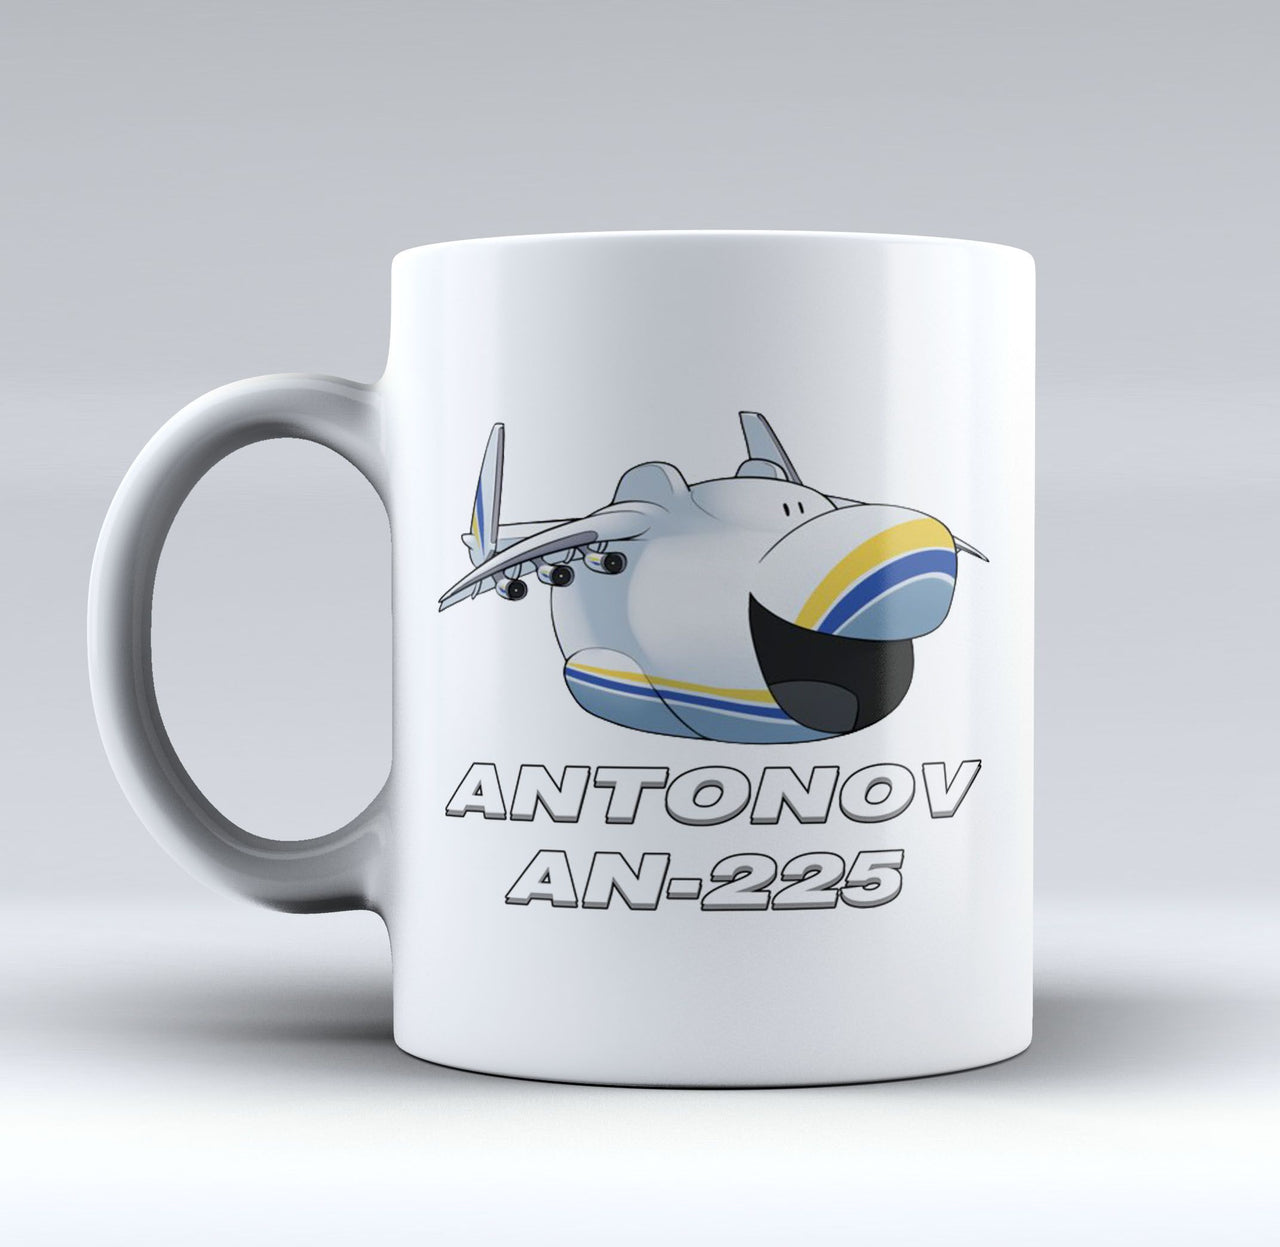 Antonov AN-225 (23) Designed Mugs